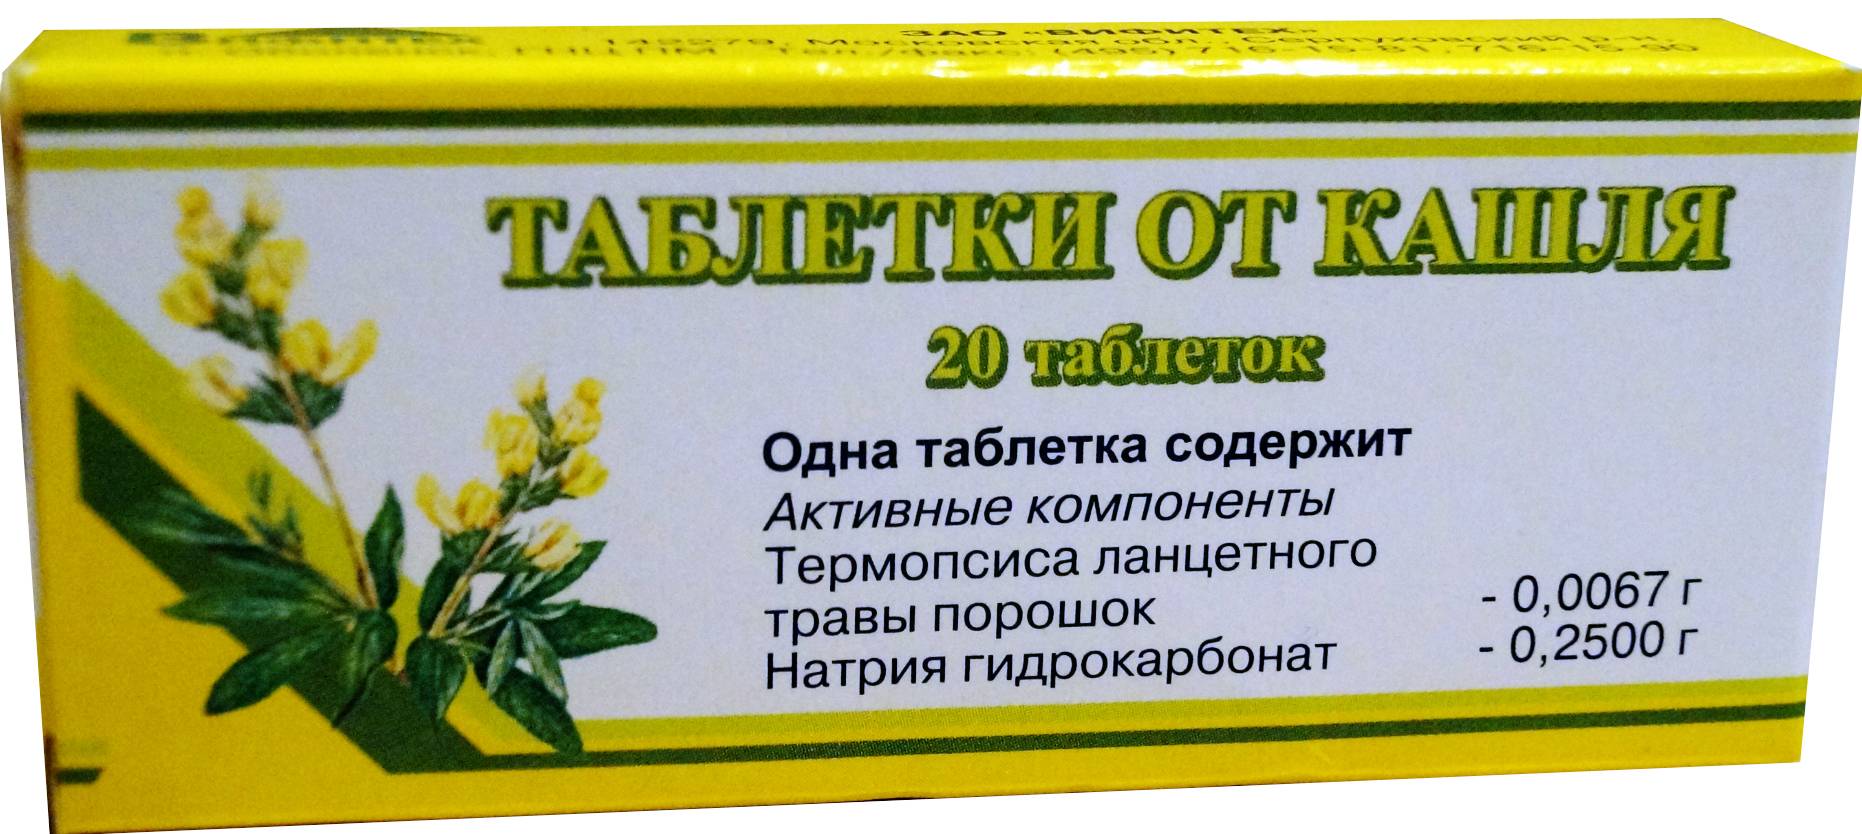 Таблетки от кашля (cought control tablets)